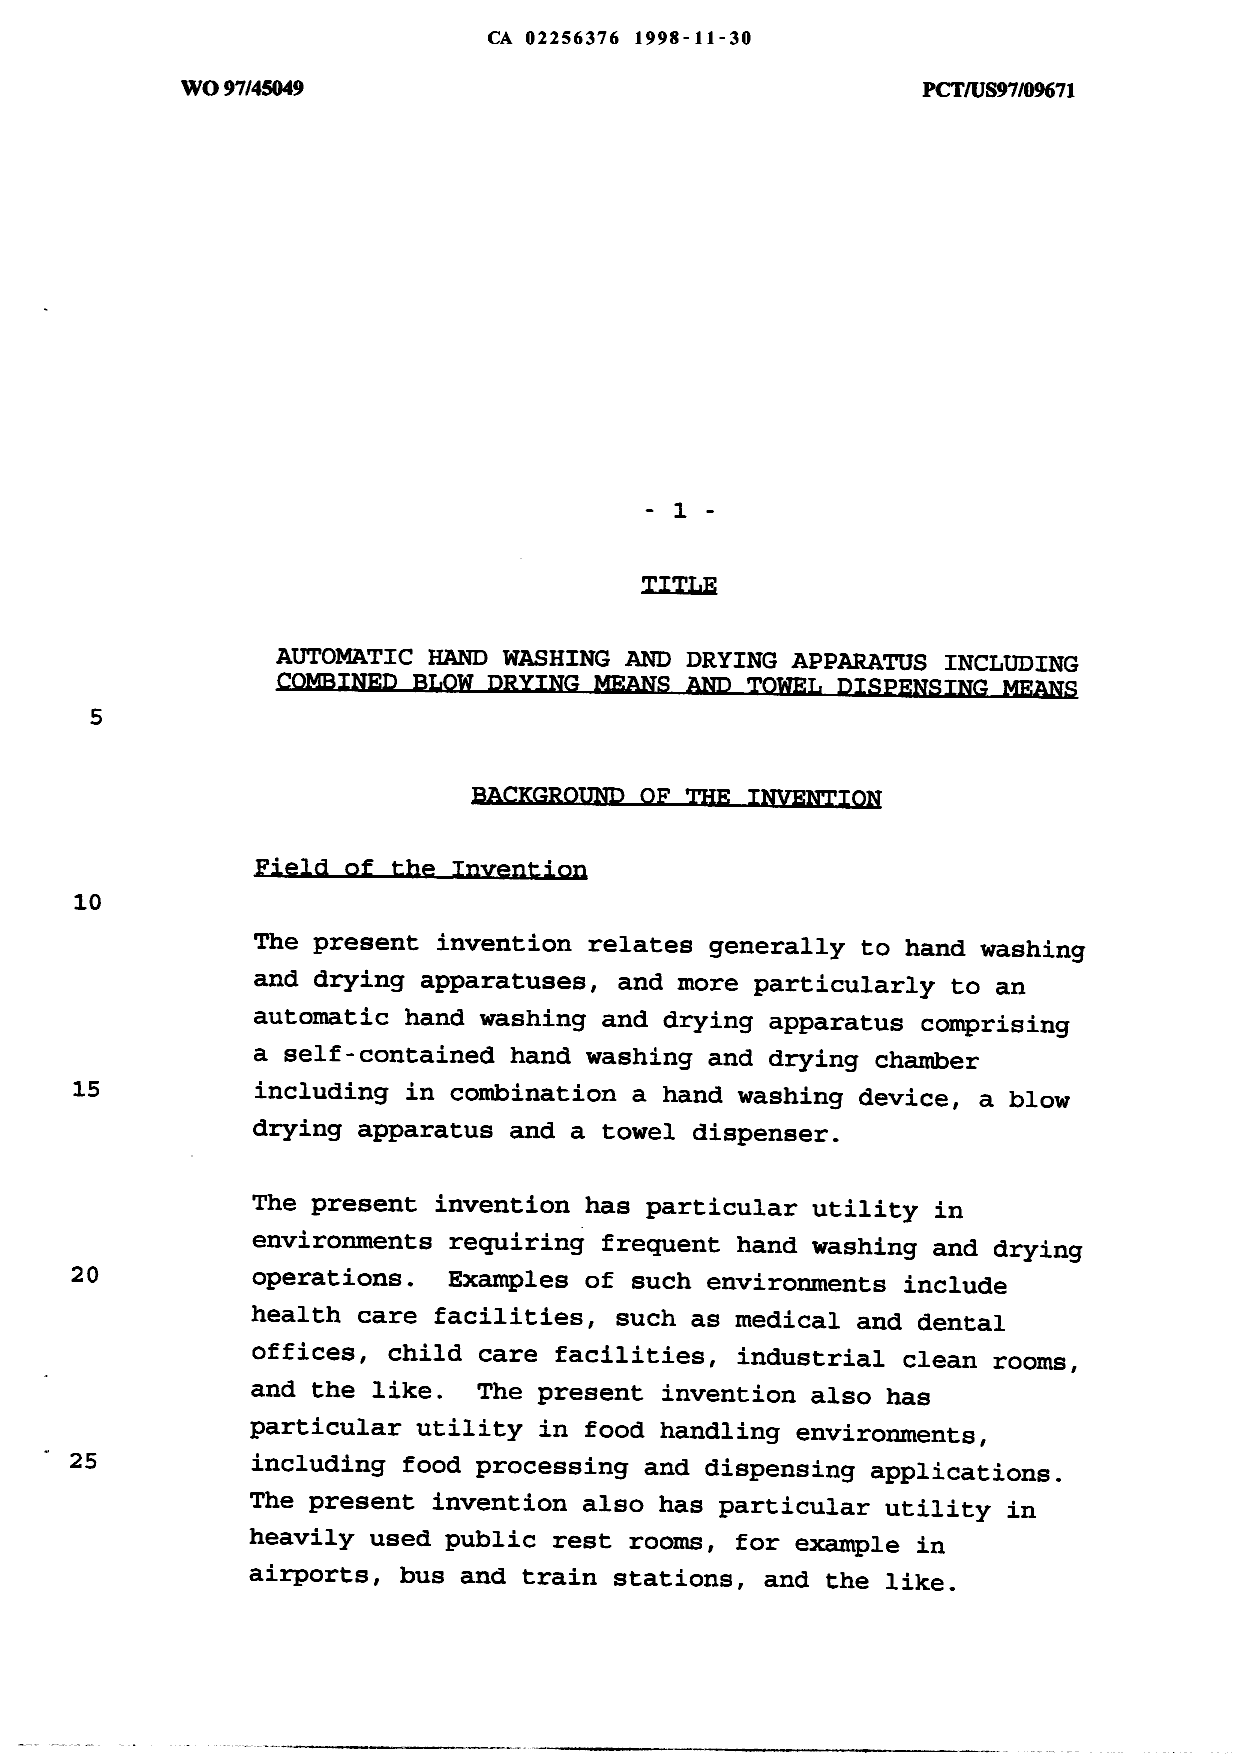 Document de brevet canadien 2256376. Description 19981130. Image 1 de 14